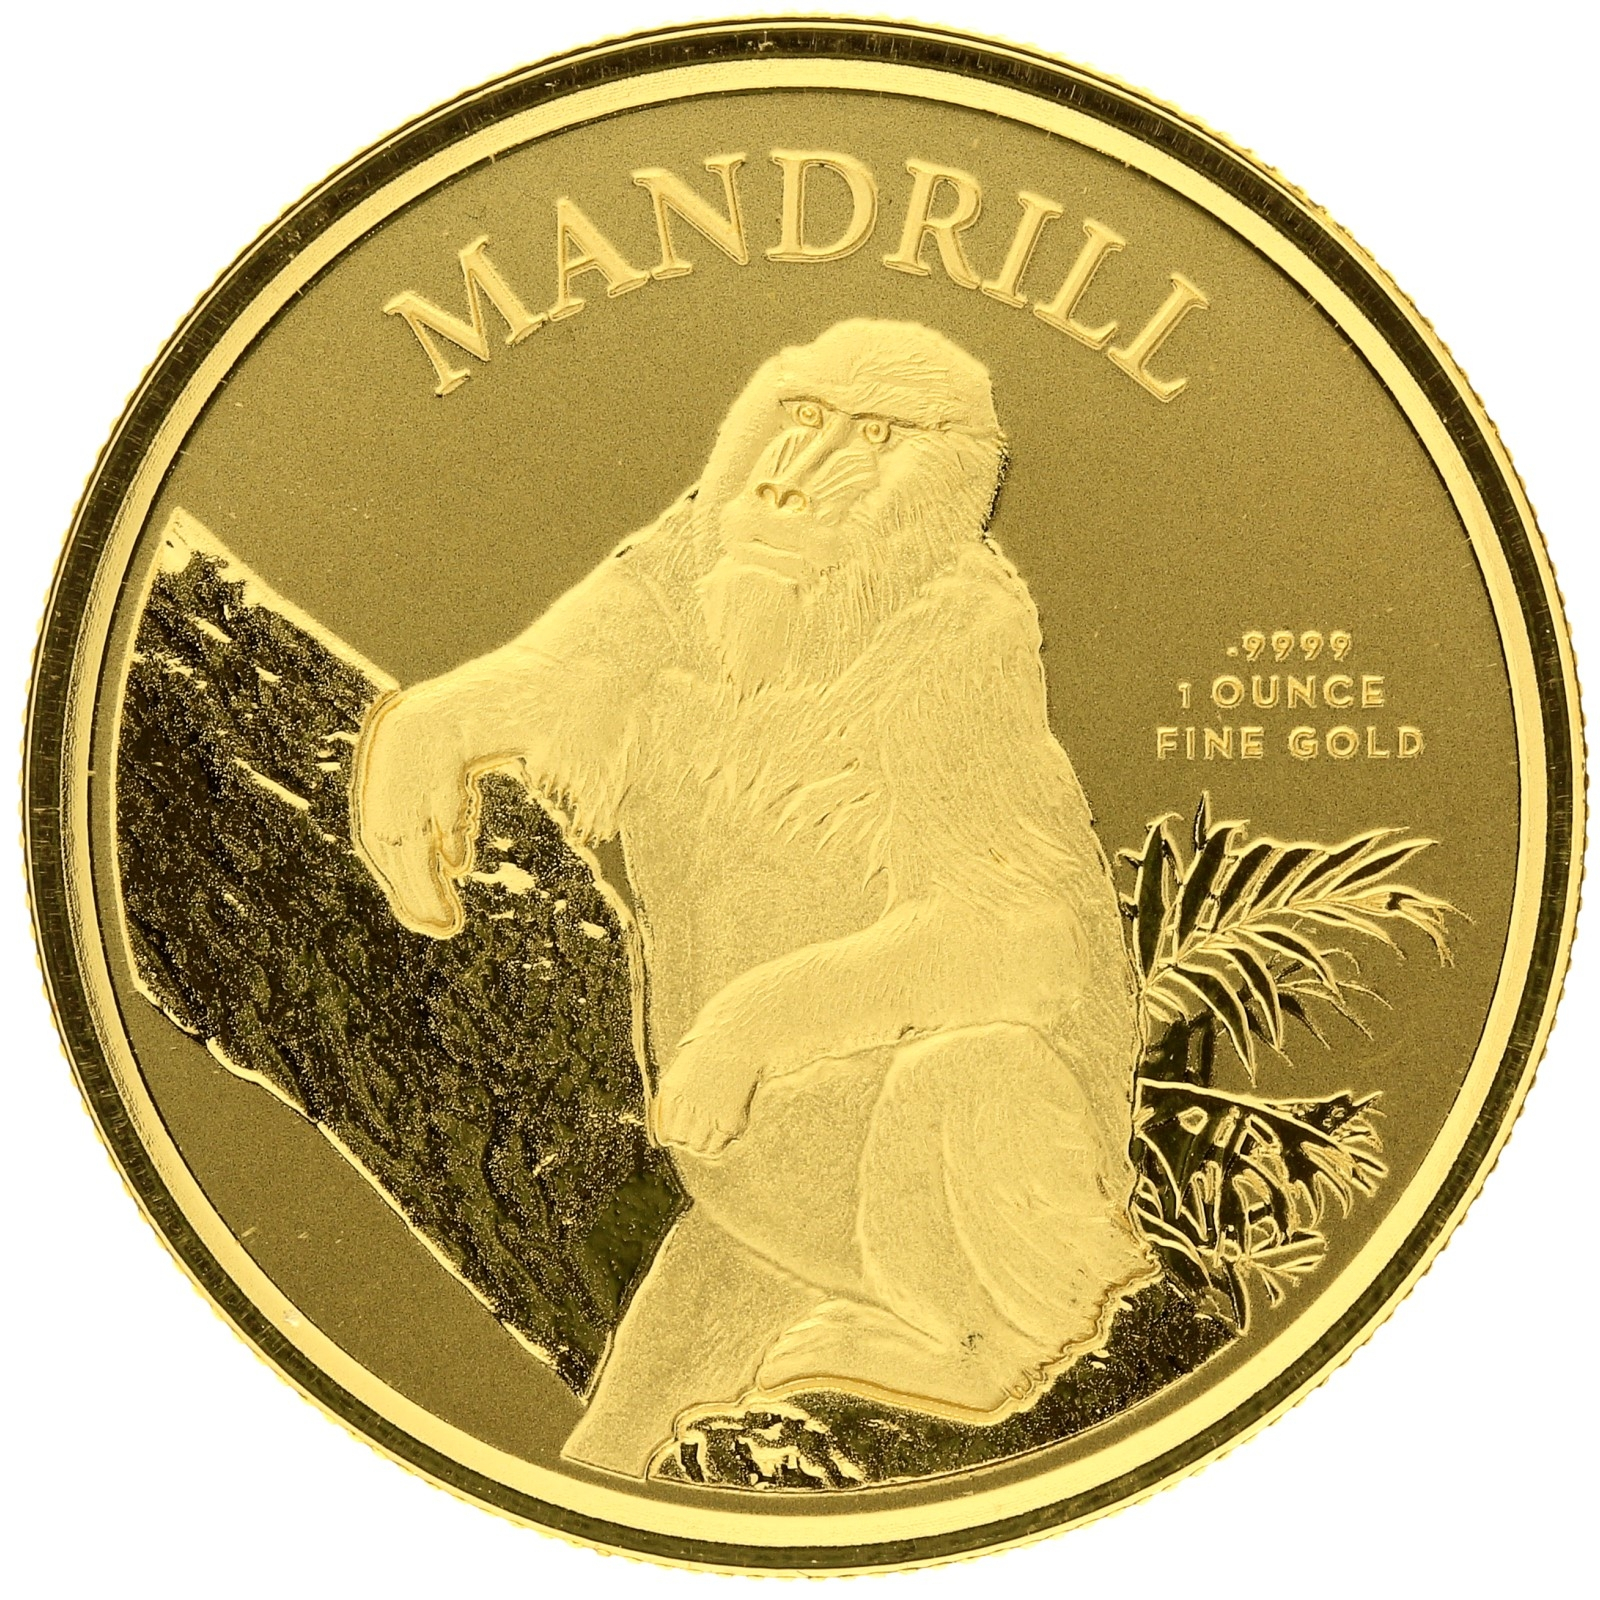 Cameroon - 3000 francs - 2021 - Mandrill - 1oz